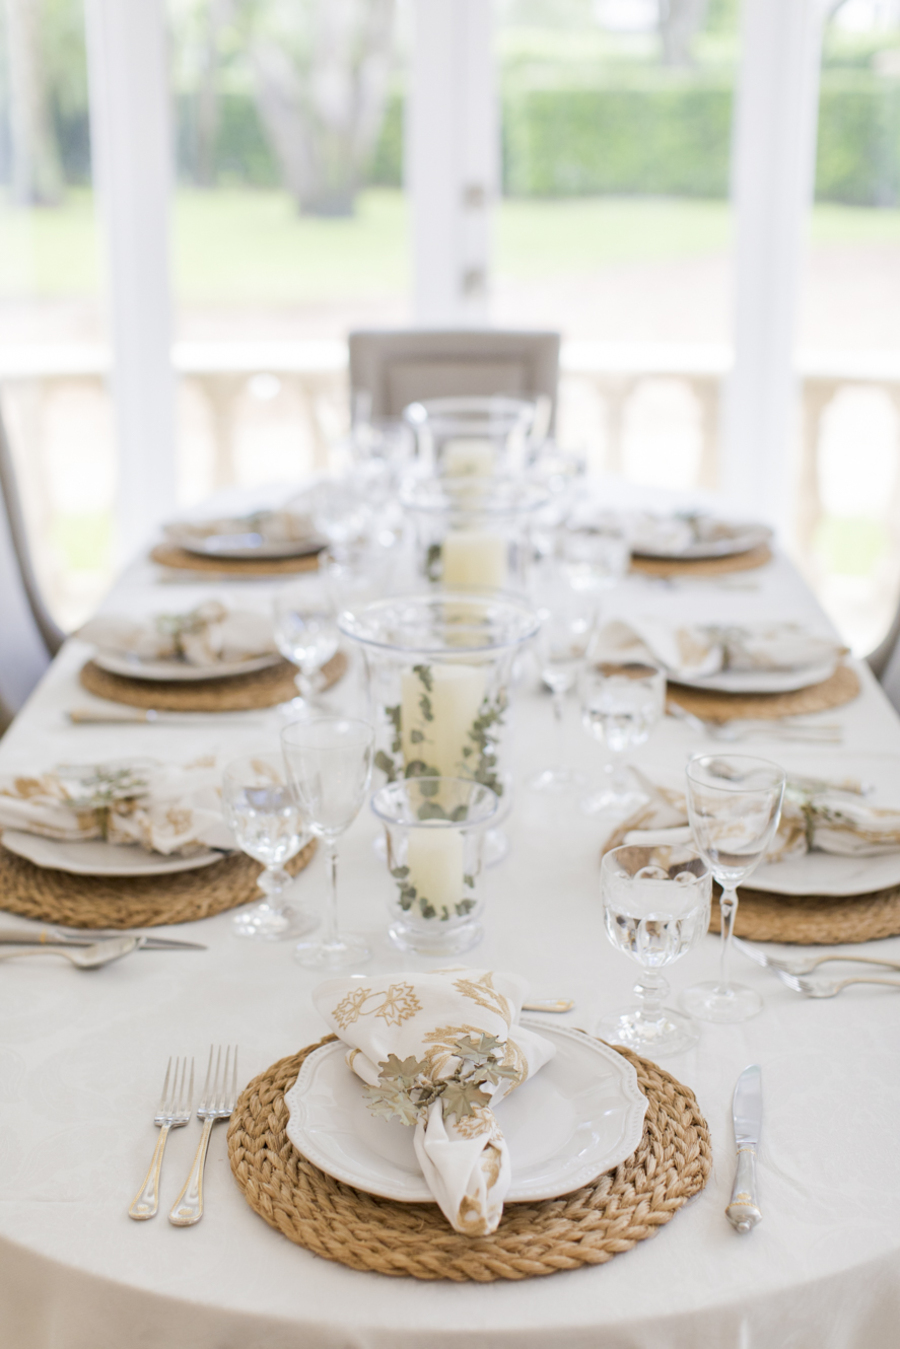 Una mesa muy elegante con copas de vidrio y platos blancos, sobre individuales de fibras naturales.